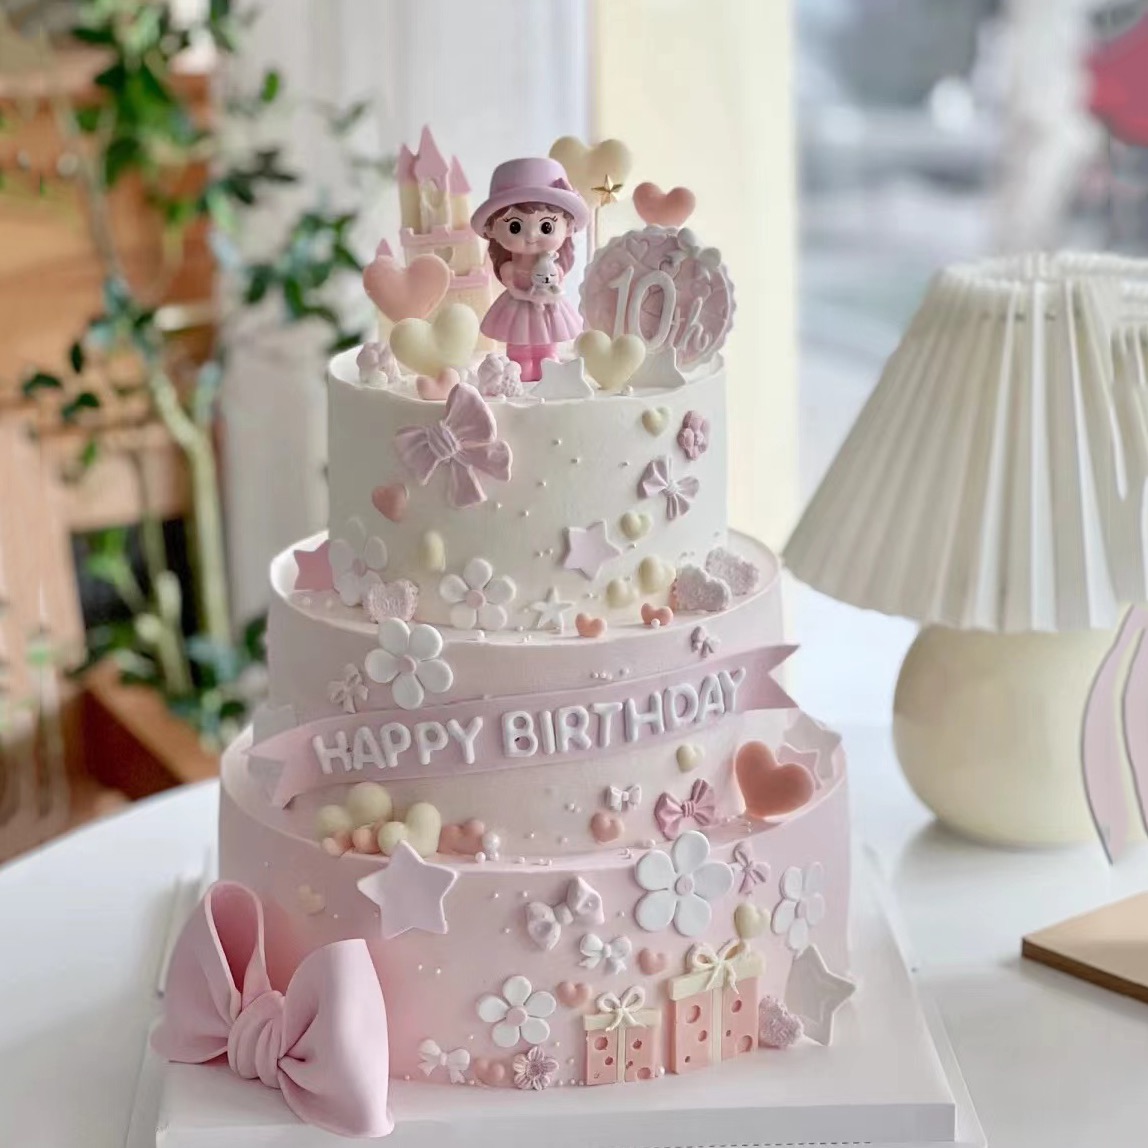 儿童蛋糕装饰摆女孩子生日插件可爱粉色抱熊女生娃娃摆件小公主